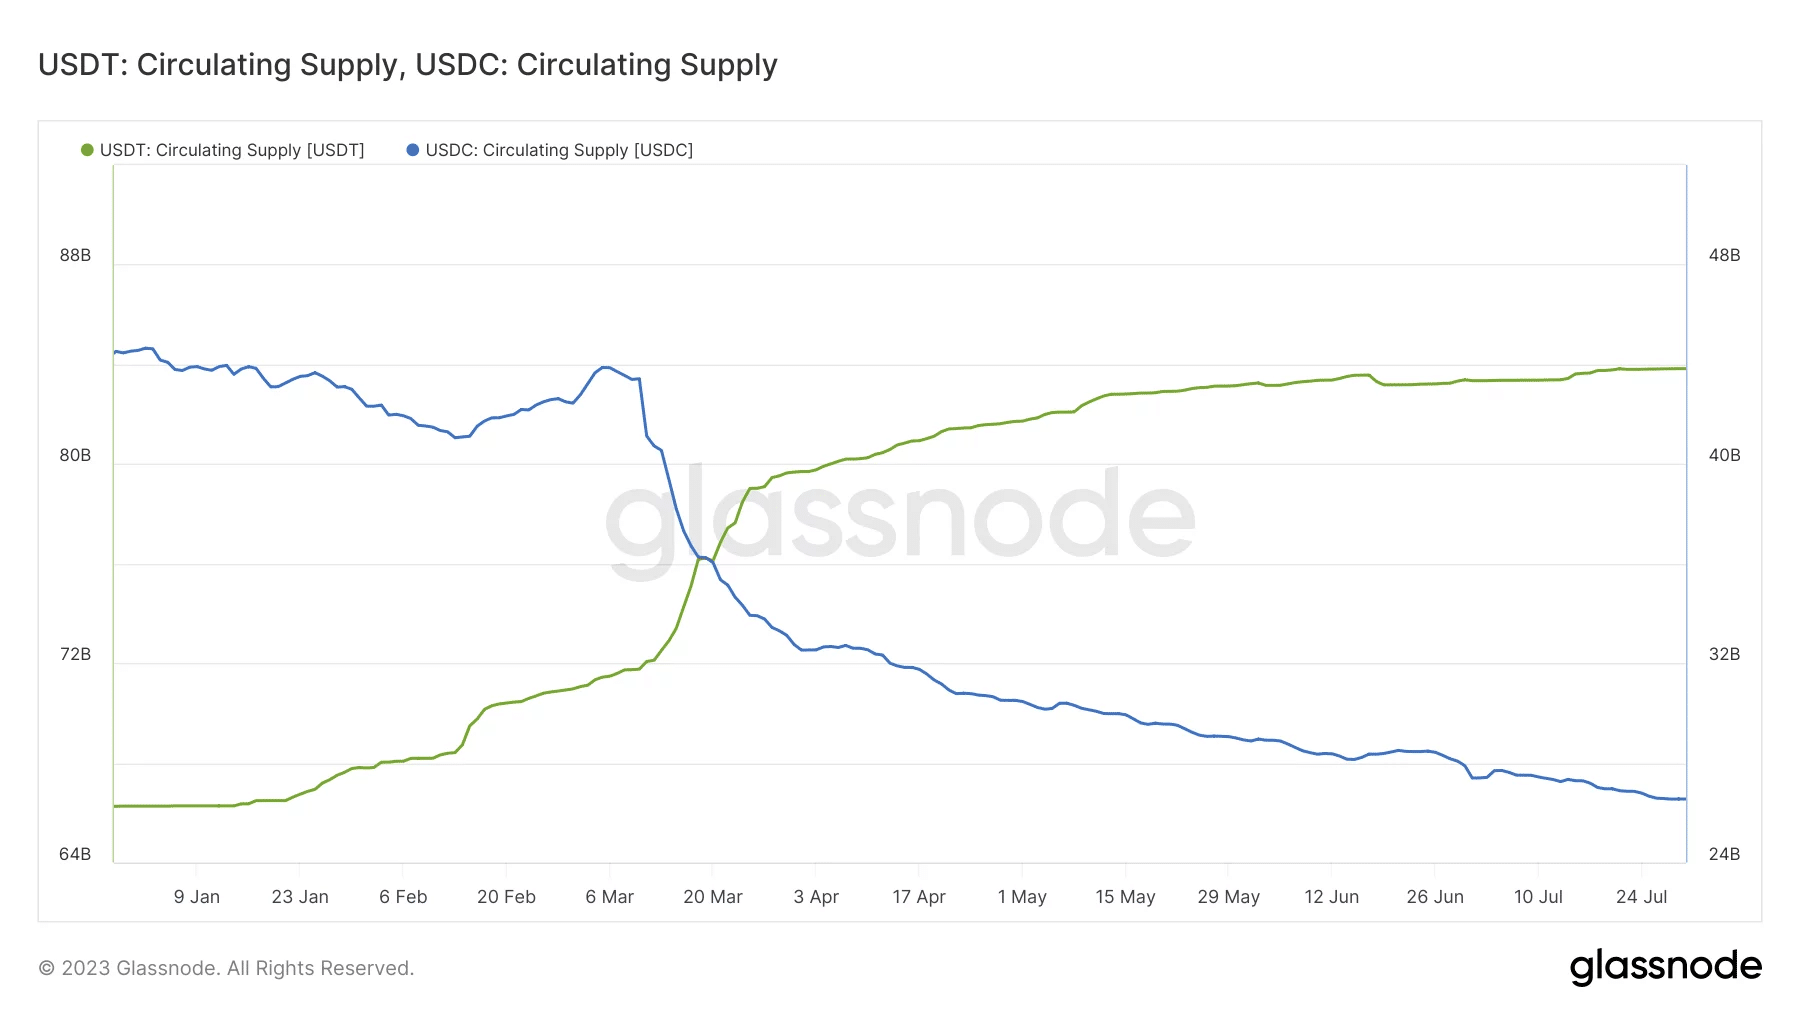 USDT (verde) y USDC (azul) actualmente en circulación